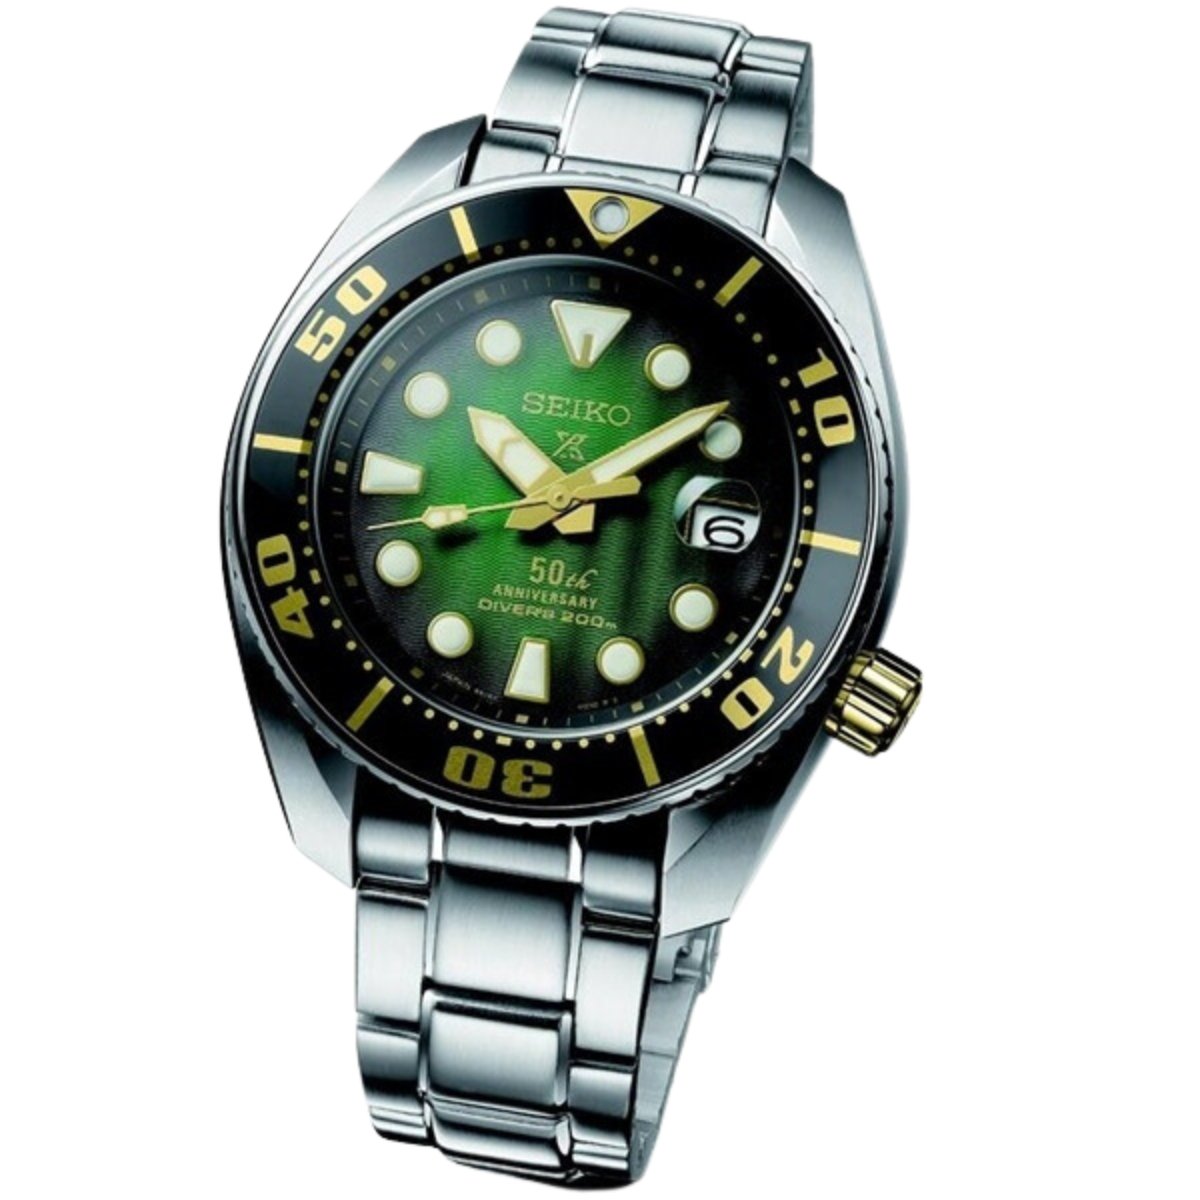 Seiko Prospex Green Sumo SBDC019 SBDC019J1 SBDC019J Limited Edition 50th Anniversary Watch (Pre-Order) -Seiko